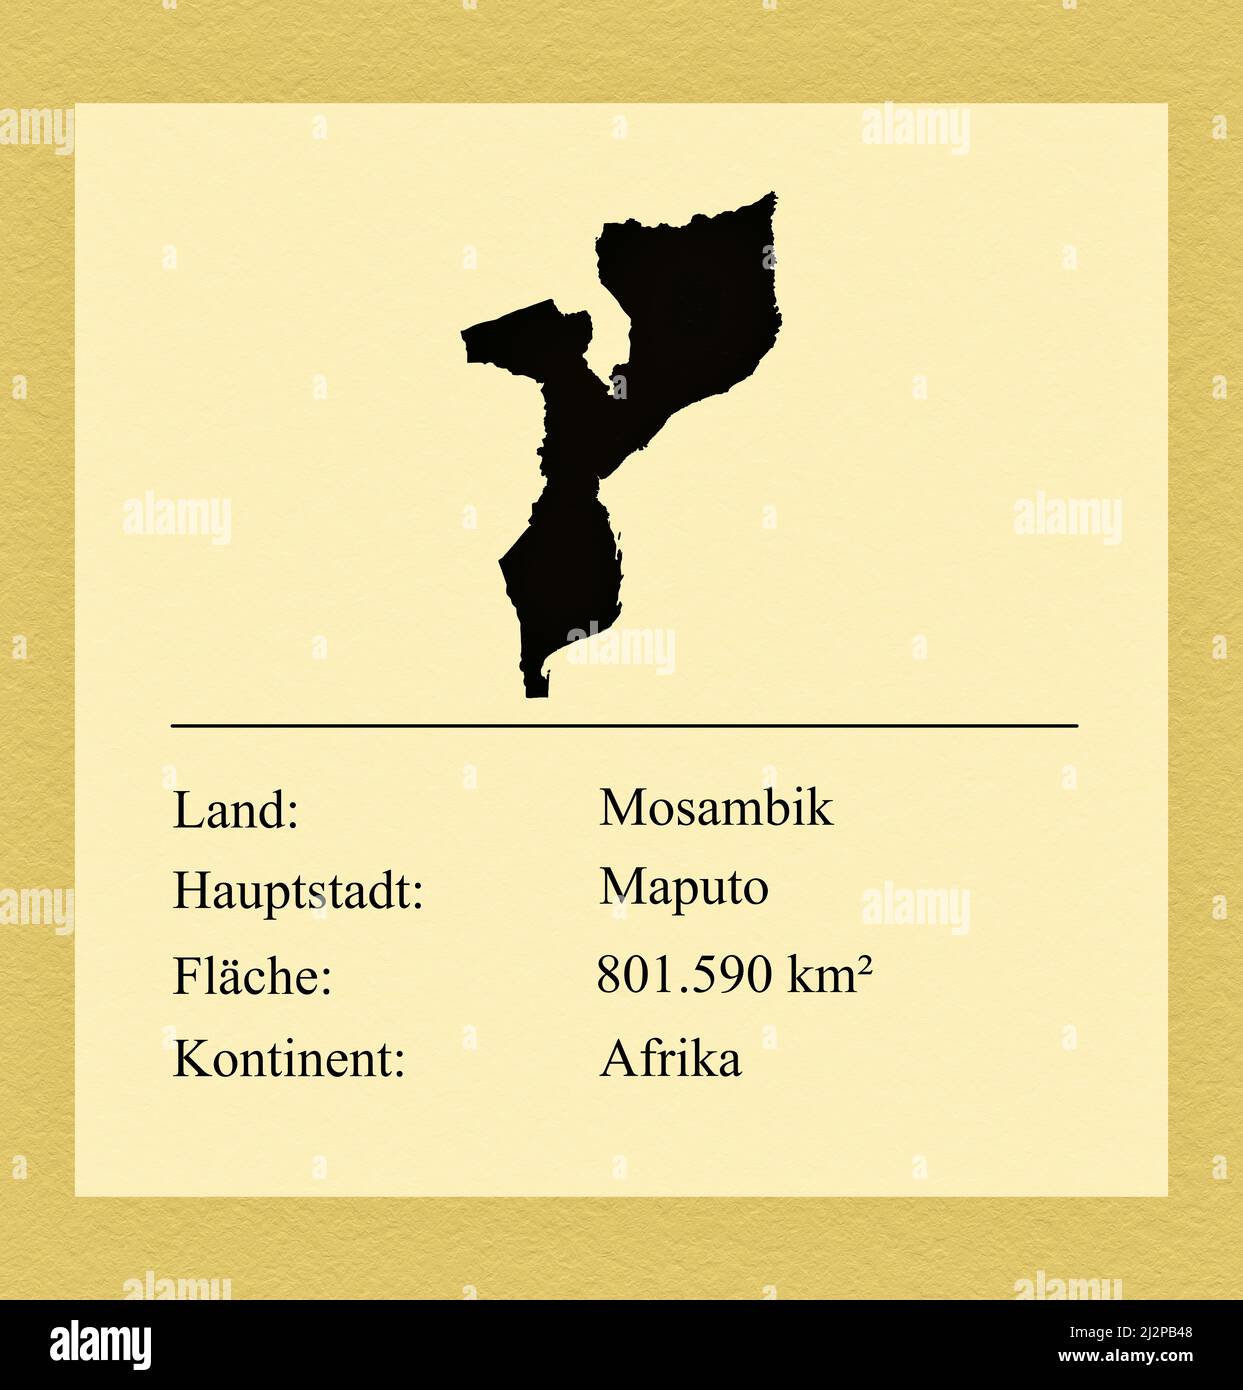 Umrisse des Landes Mosambik, darunter ein kleiner Steckbrief mit Ländernamen, Hauptstadt, Fläche und Kontinent Foto de stock